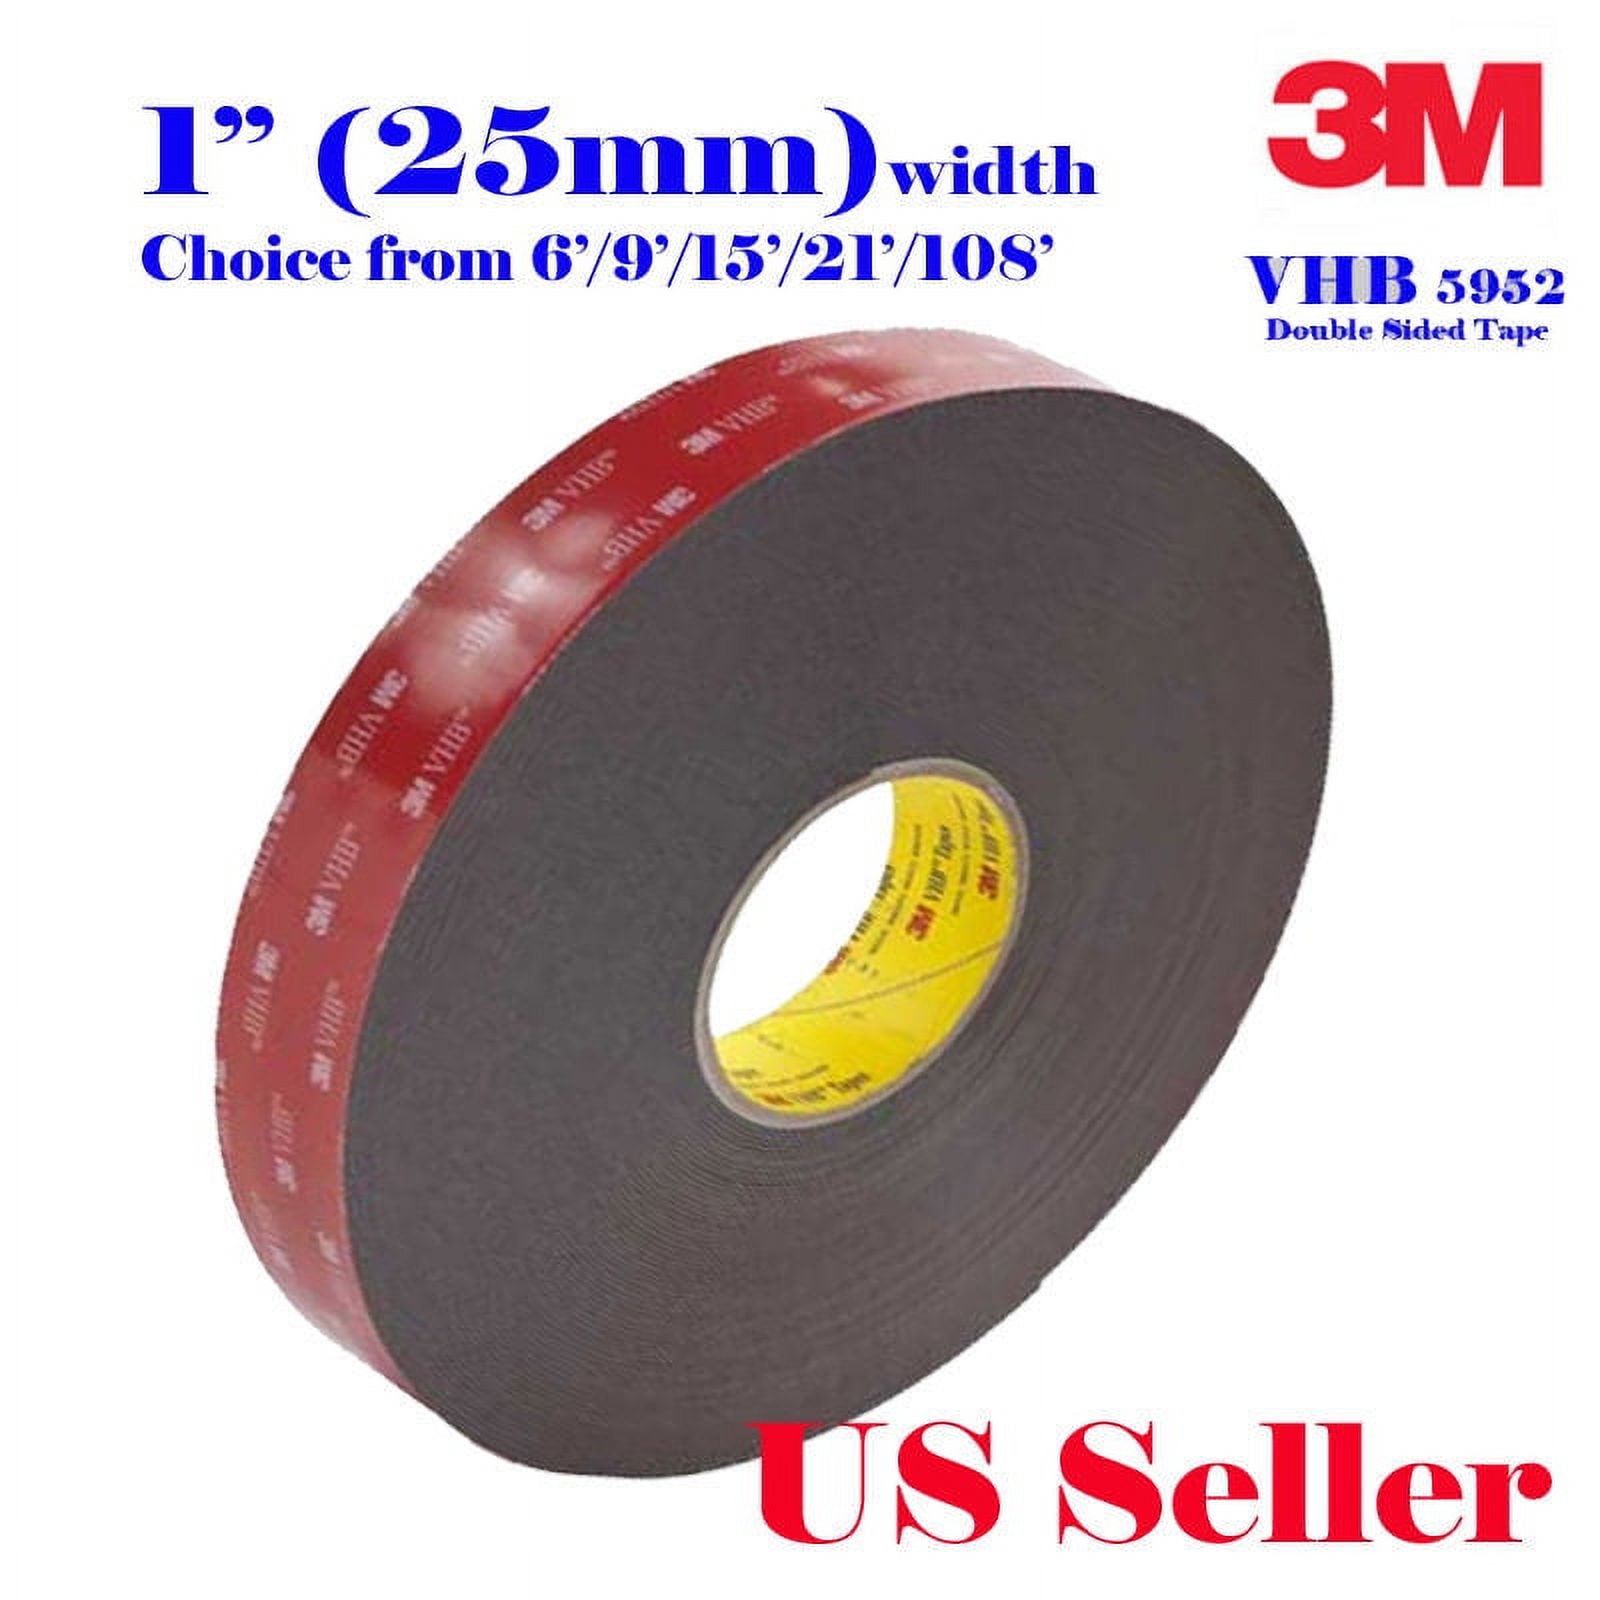 3M Double Sided Tape, Very High Bond Waterproof Mounting Tape, VHB Heavy  Duty Foam Tape （5952 Red）